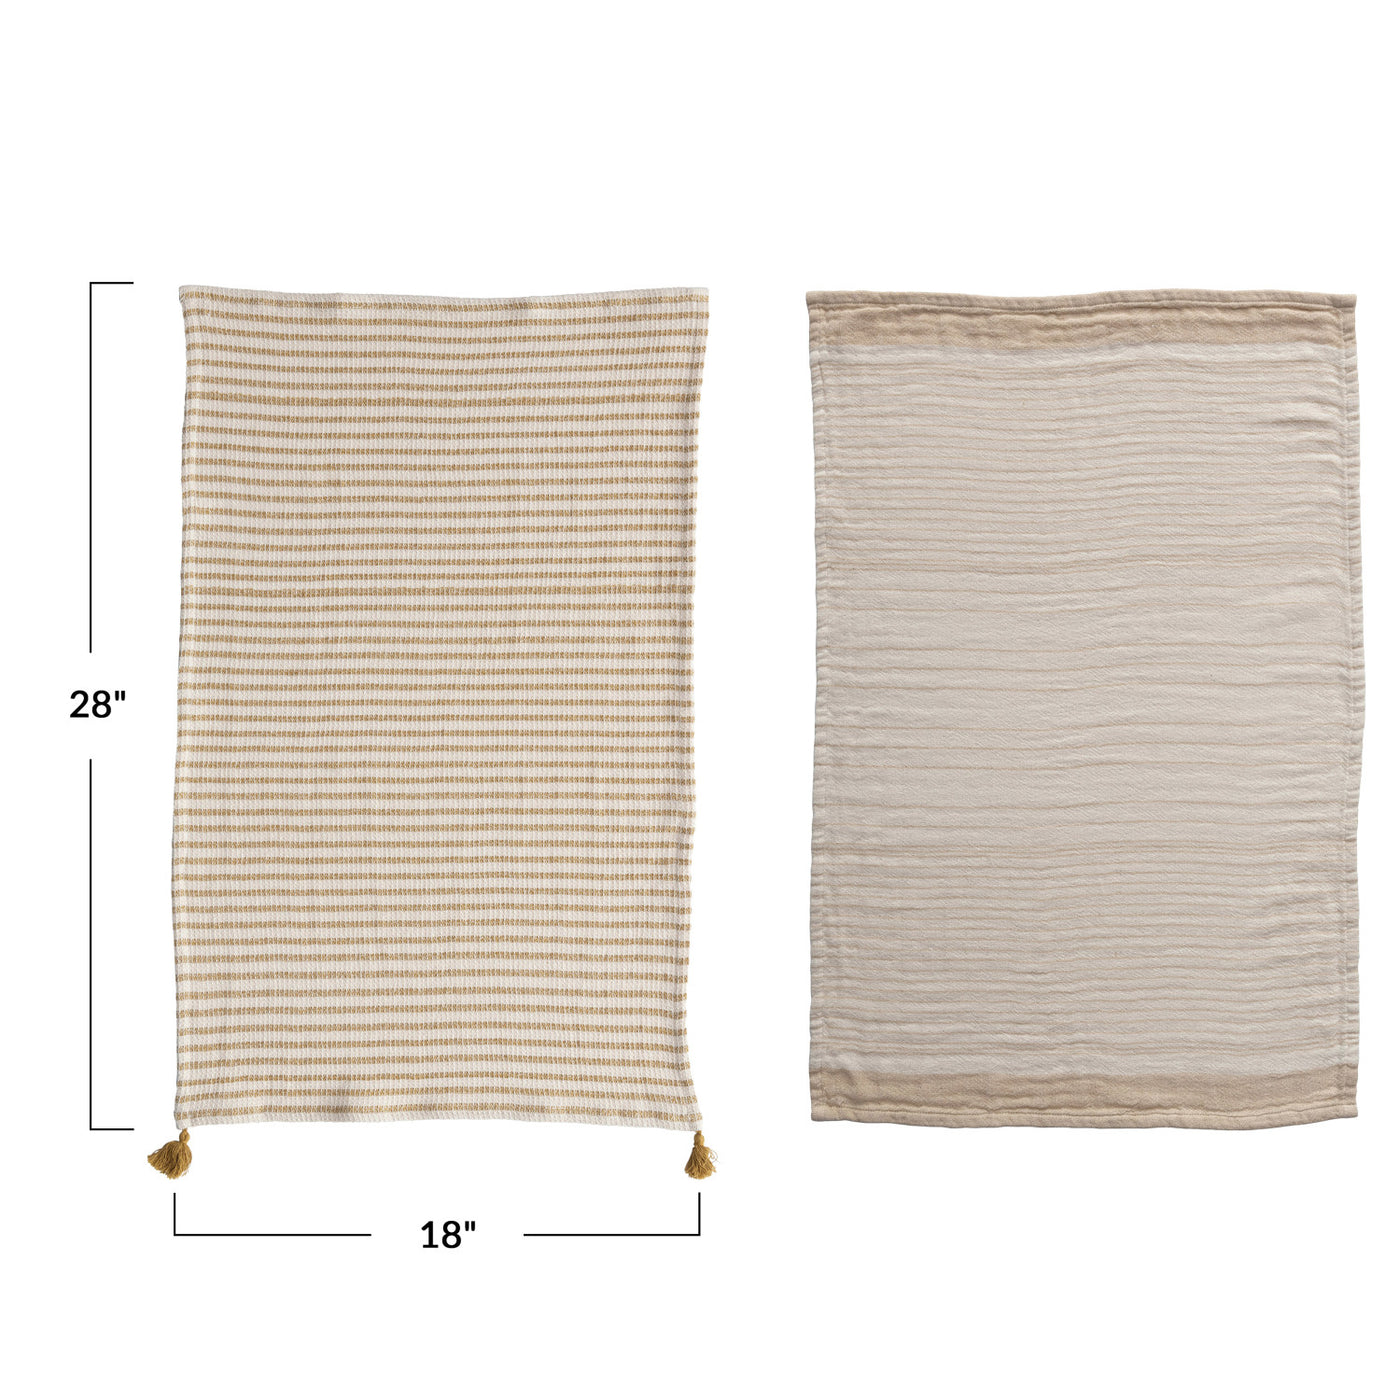 Cotton Double Cloth Striped Tea Towel Set